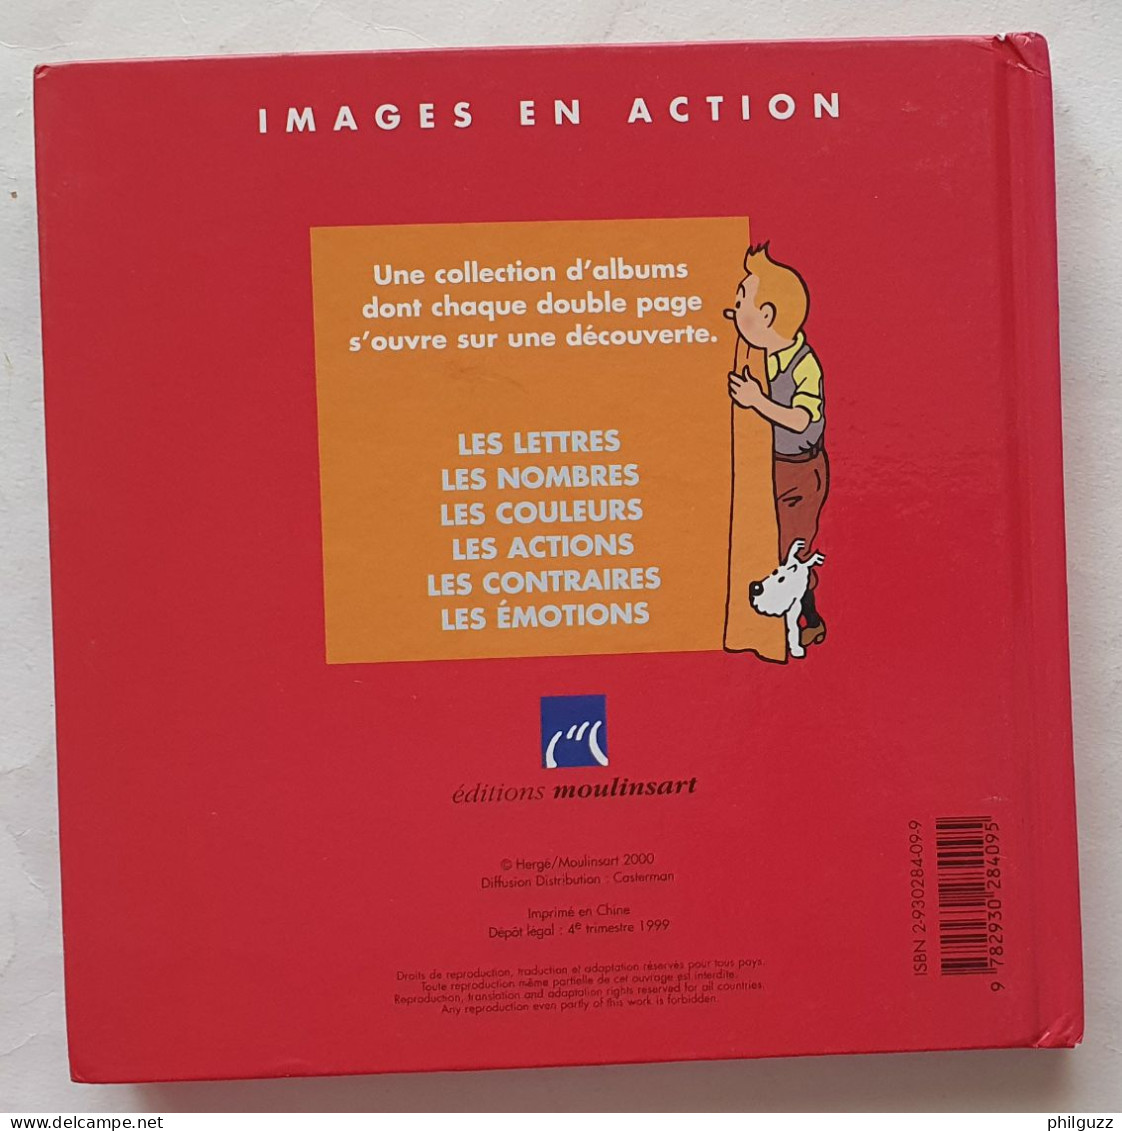 Images En Action LIVRE ALBUM TINTIN MOULINSART 2000 JE DECOUVRE LES NOMBRES - Hergé